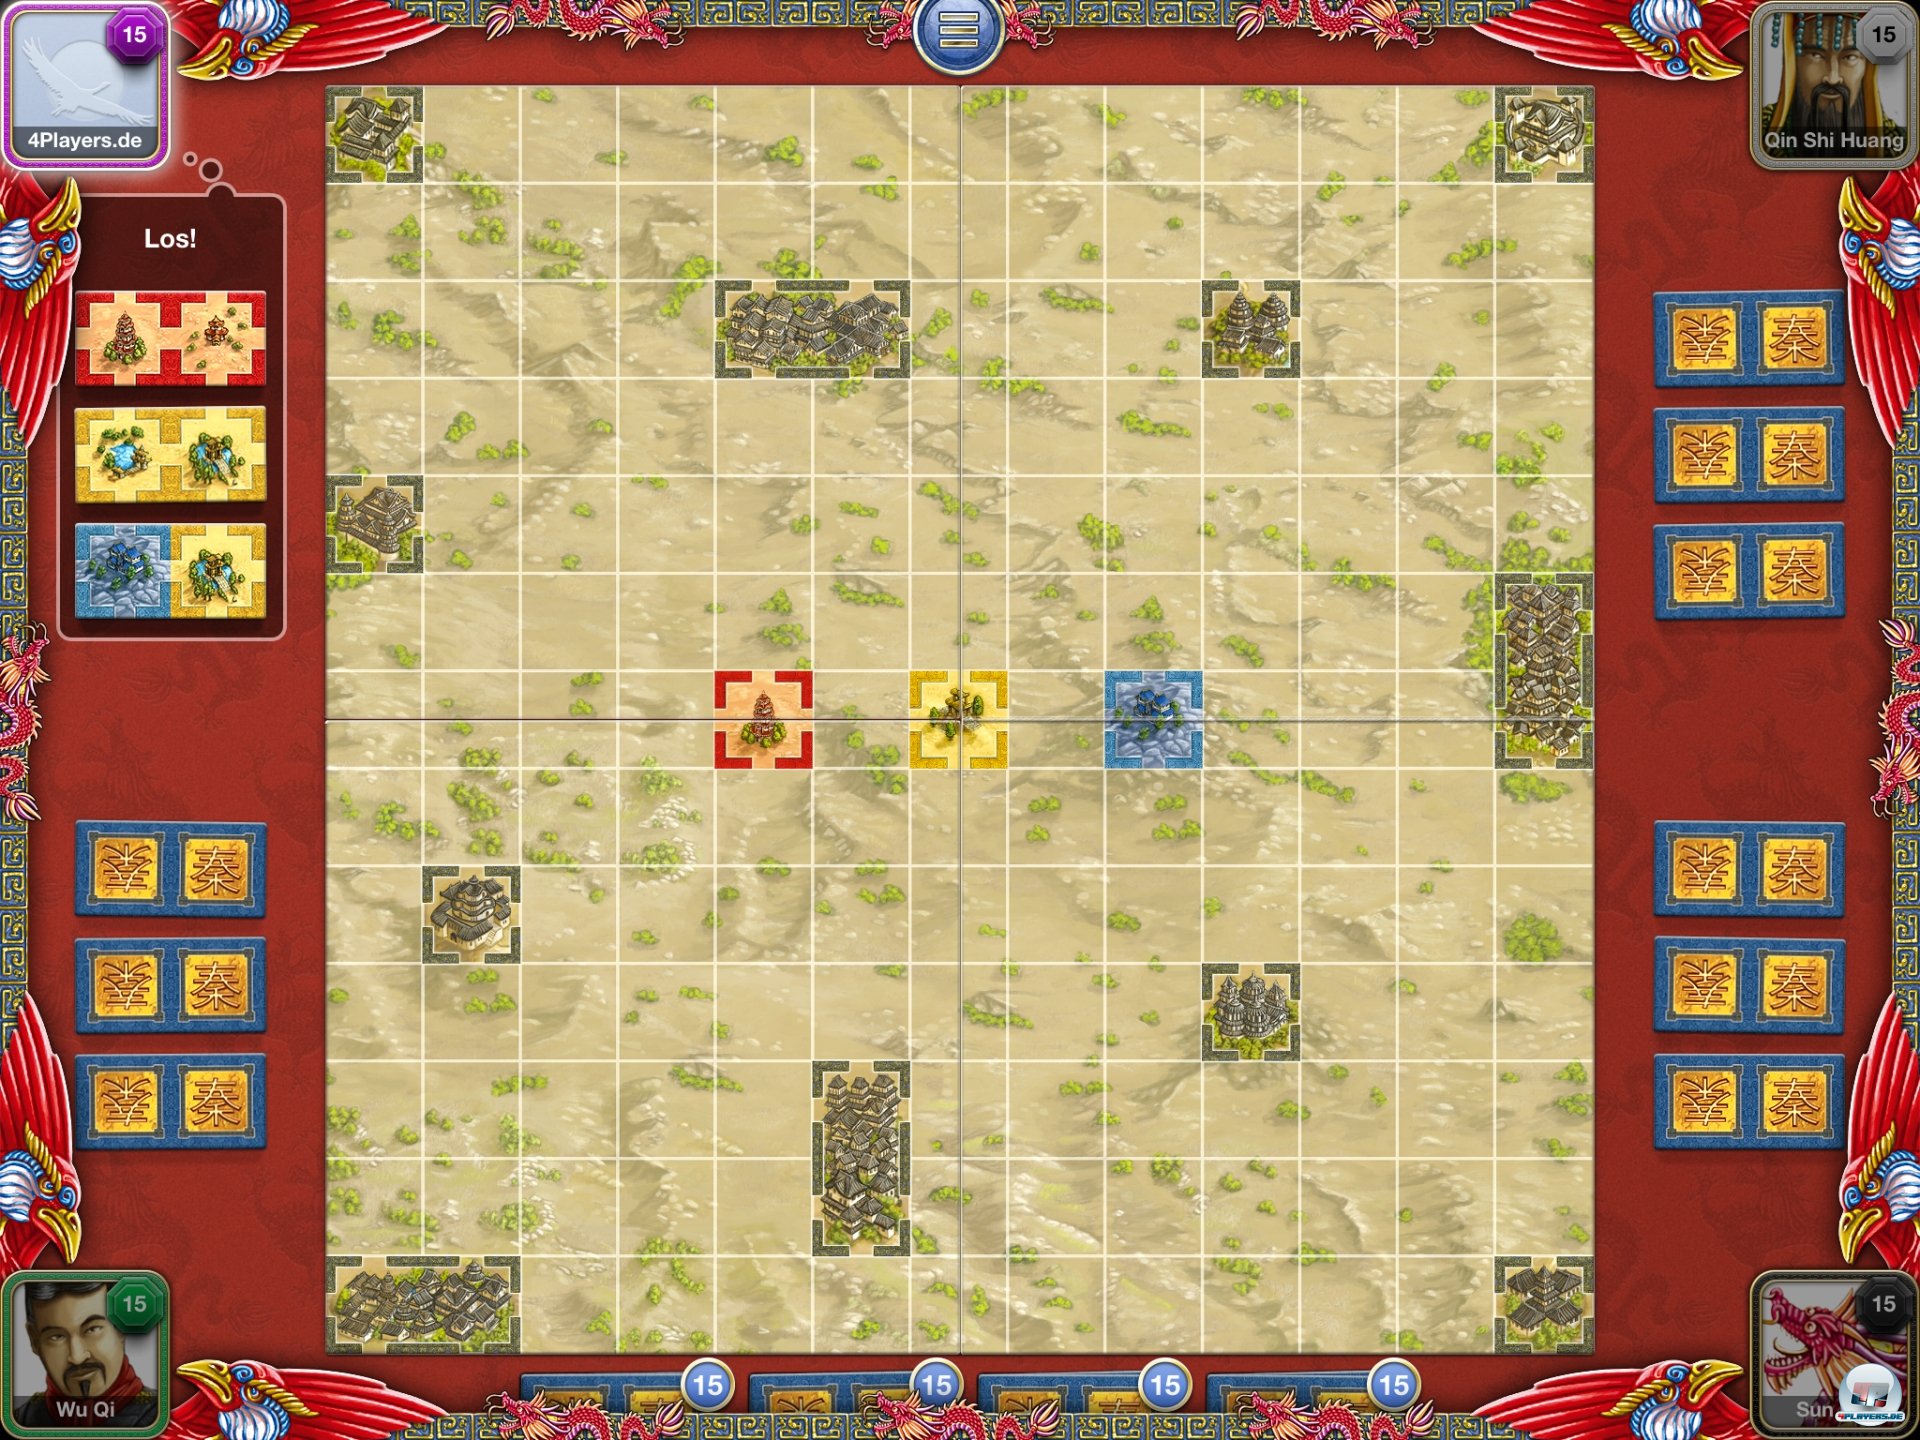 Zu Beginn hat jeder Spieler drei Doppelplättchen, die er an die drei farbigen Positionen anlegen kann.